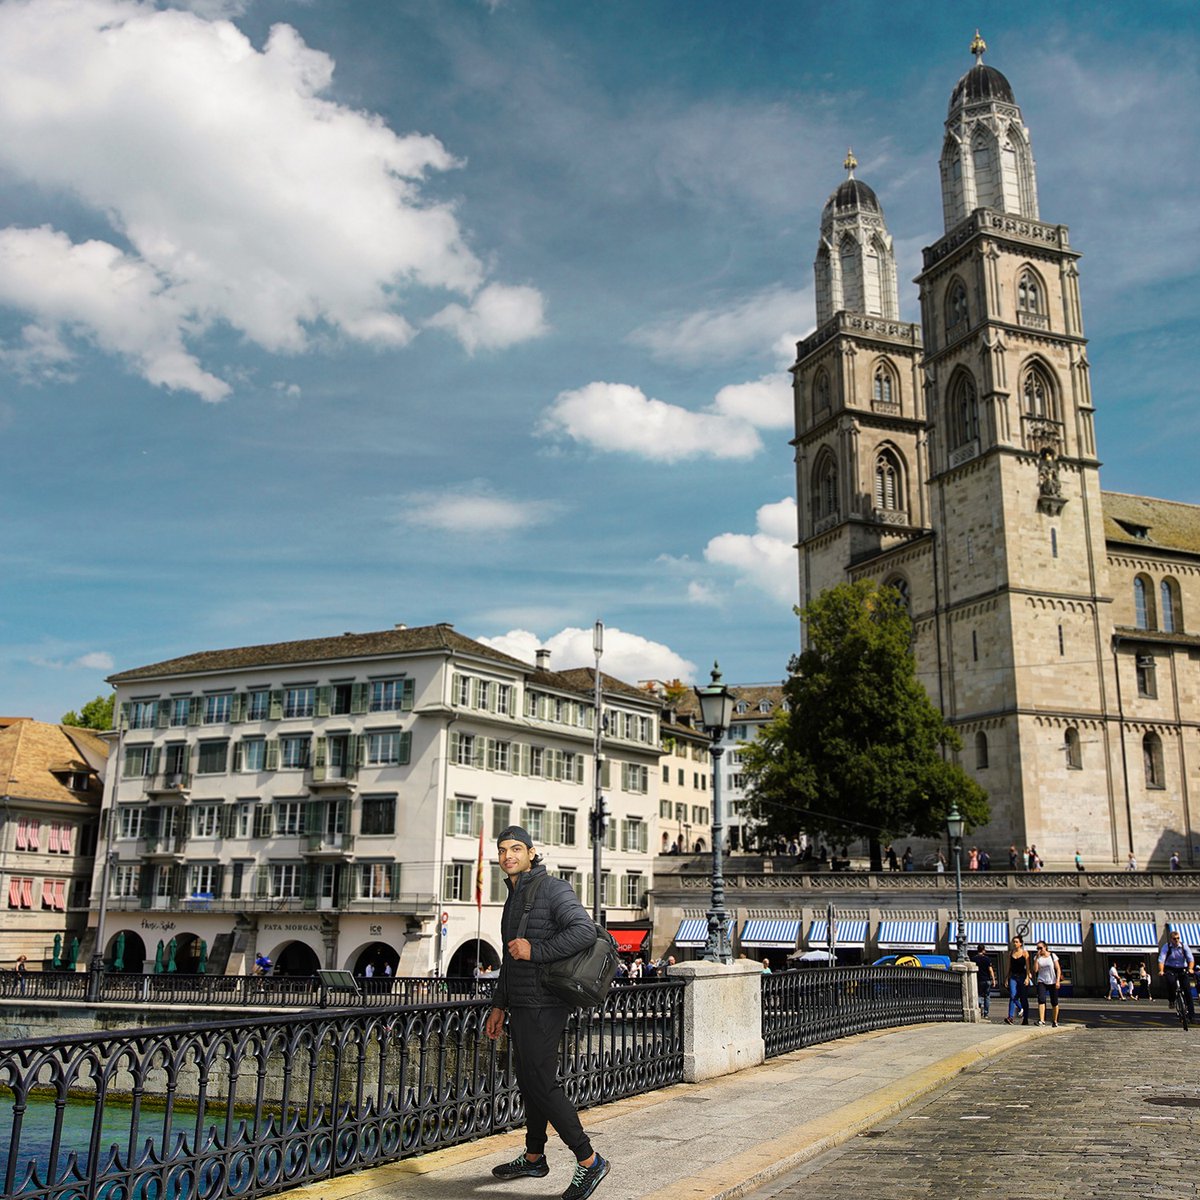 Experience Zurich's allure by foot – from historic landmarks to scenic views, every walk is a journey of discovery. 📍 @VisitZurich @Neeraj_chopra1 #INeedSwitzerland #Switzerland #ZurichCity #CityWalk